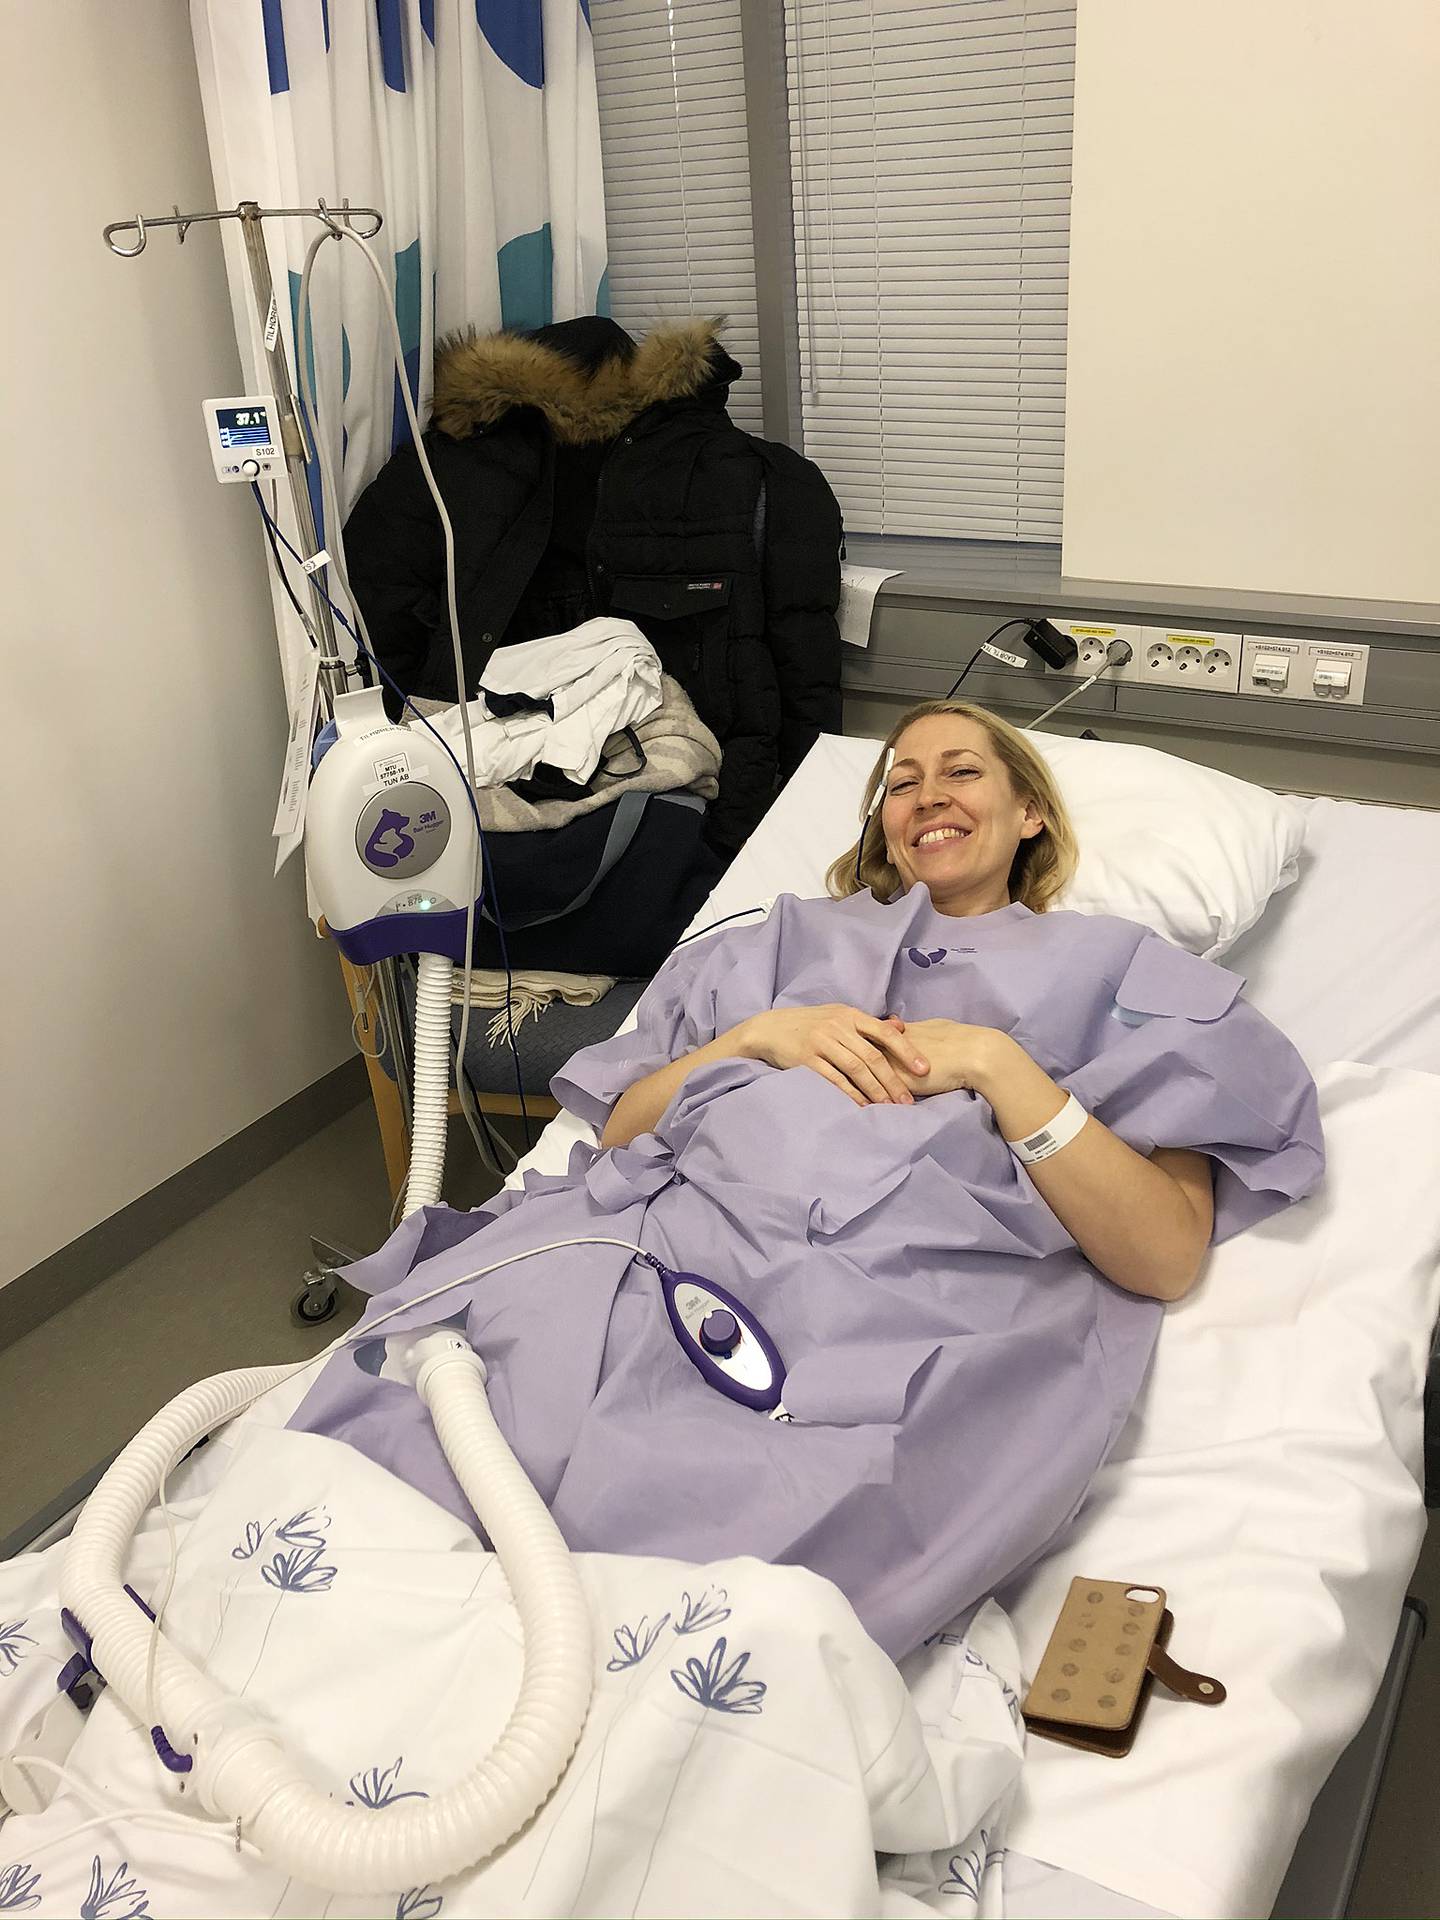 OPERASJONSKLAR: Veronica Lindholm i en varmefrakk før operasjon for tykktarmskreft. Hun har delt flere bilder på Instagram underveis i kreftbehandlingen. Foto: Privat